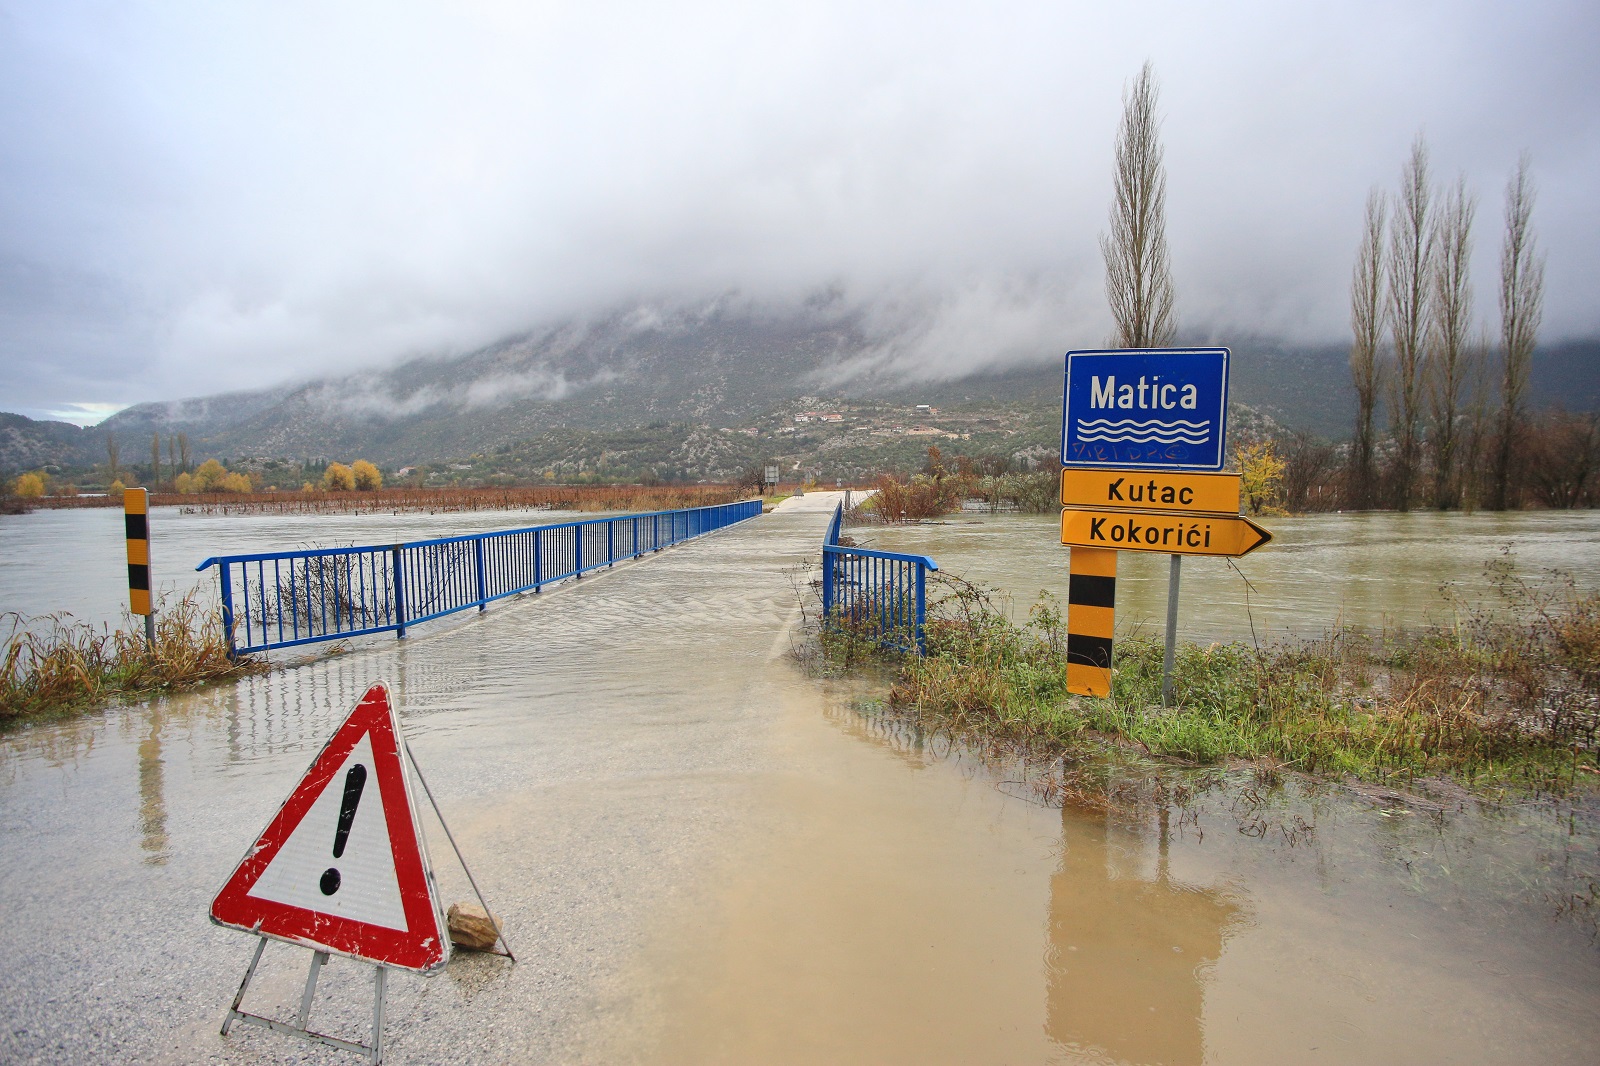 Vrgorac, 05.12.2020. - Nakon obilnih kiša rijeka Matica se izlila iz toka i poplavio je dio ceste između Vrgorca i Ploča. U jutarnjim satima voda je poplavila Vinski most i promet od Vrgorca, s izlaza autoceste na čvoru Vrgorac, prema Pločama i Dubrovniku se odvija otežano.
Cestarske službe su stavile znakove upozorenja na nekoliko mjesta, ali voda nadire i vjerojatno će doći do većeg zastoja u prometu.
Cesta od sela Kutac prema Vinskom mostu također je dijelom pod vodom, pa se vozači koji putuju prema Pločama upozoravaju na oprez. foto HINA/ Jure DIVIĆ/ ml